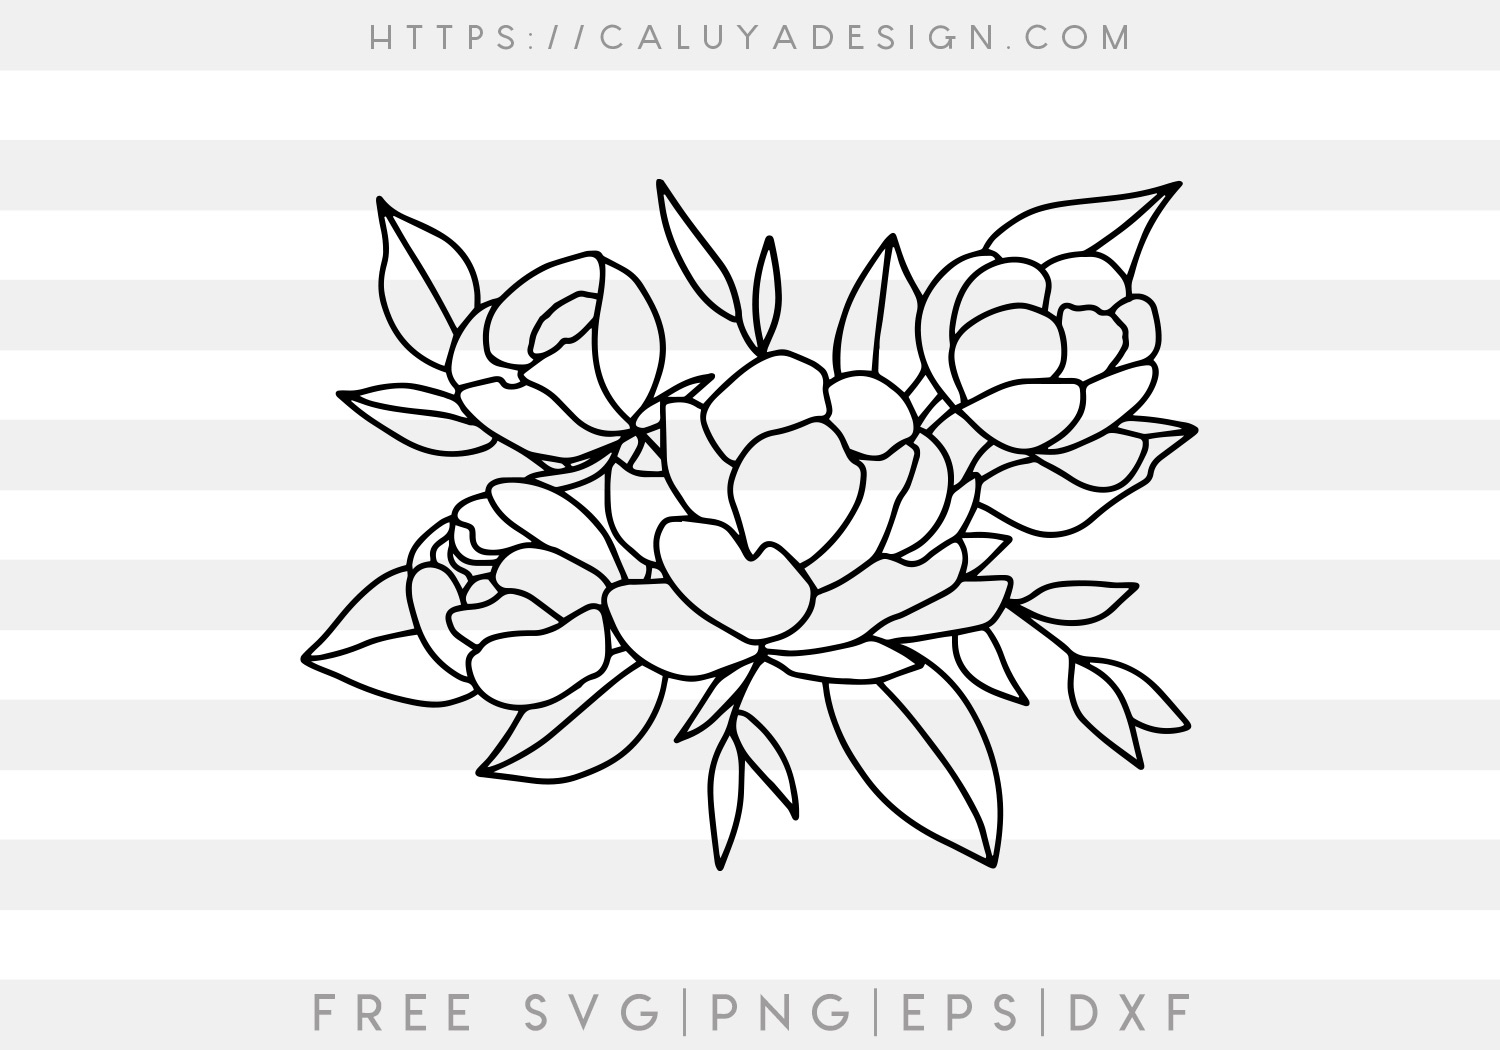 Free Handdrawn Flower Bouquet SVG